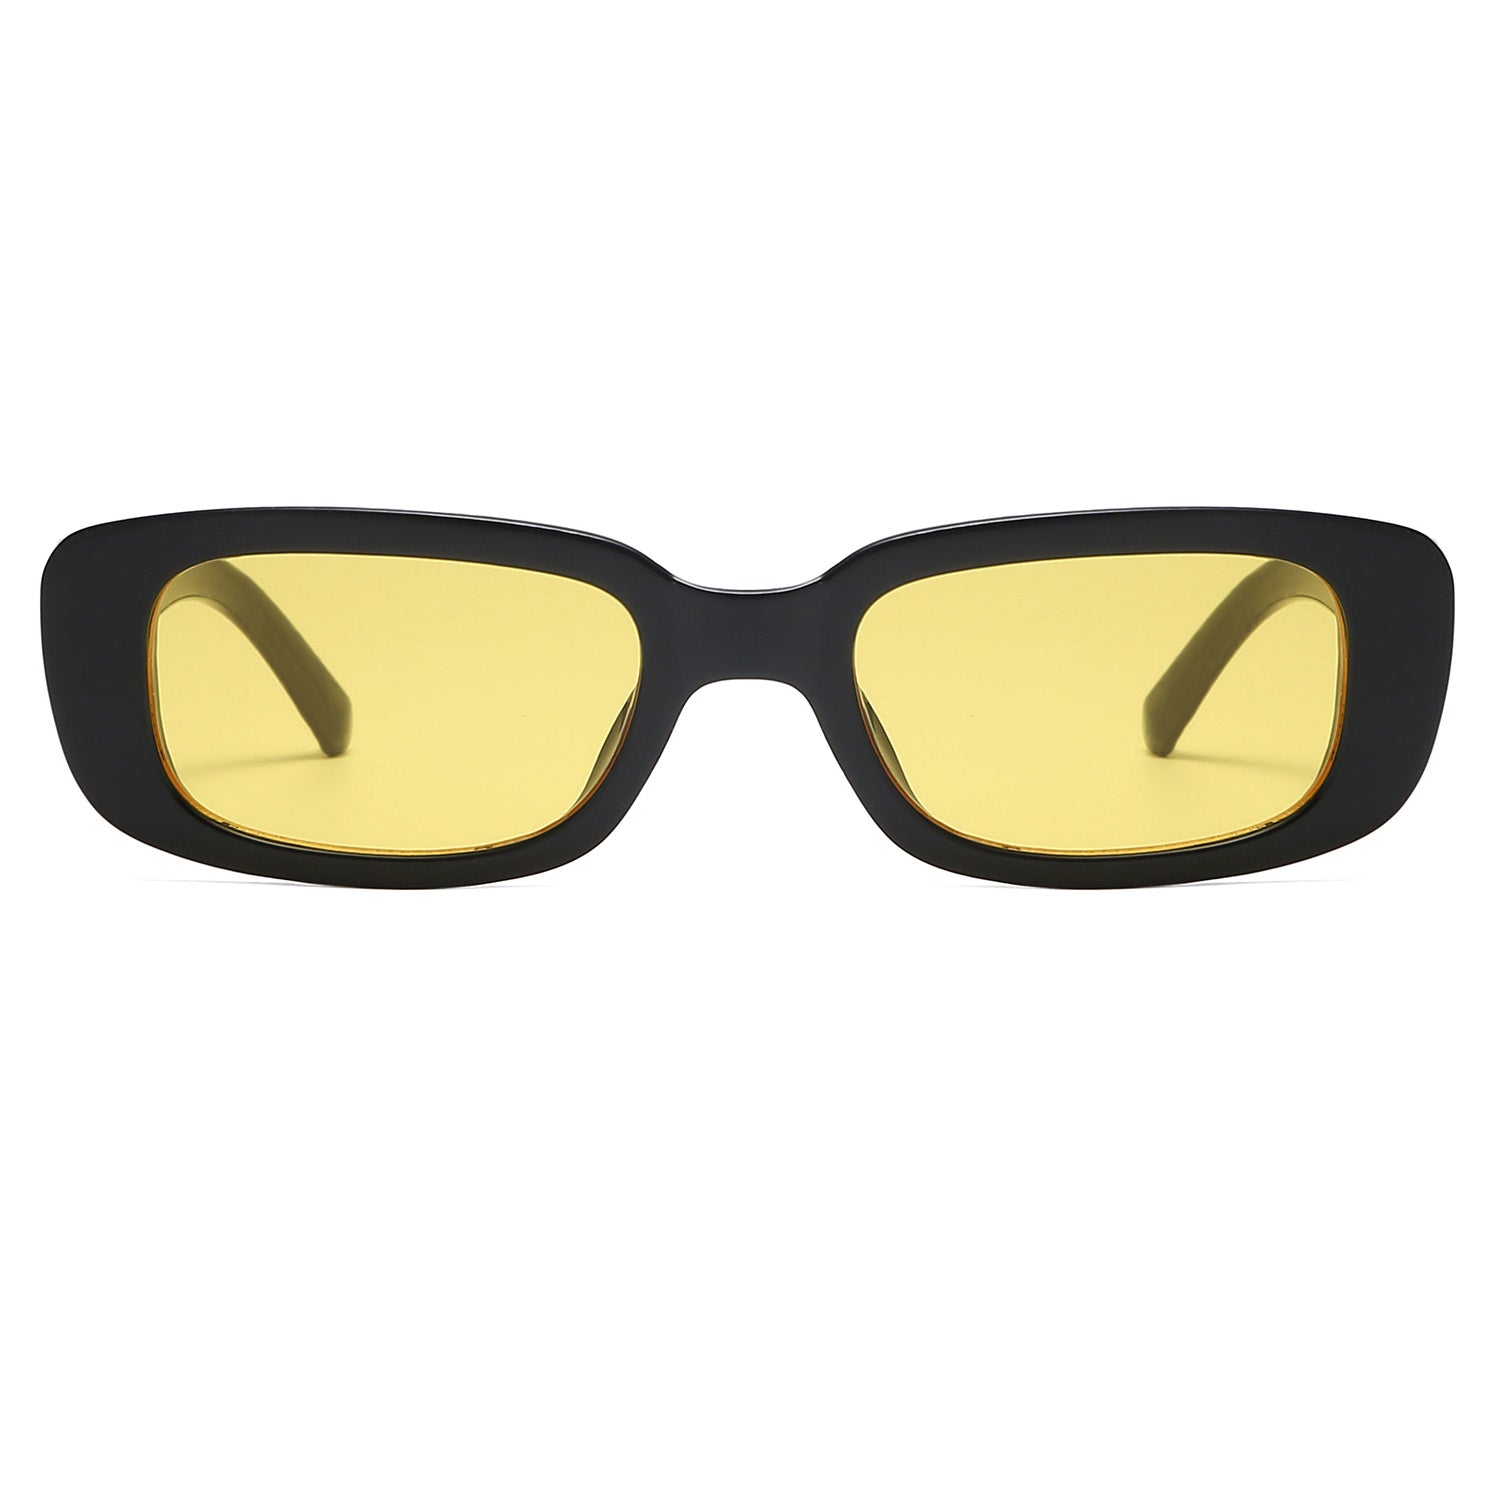 Men's Sunglasses – Vanlinker